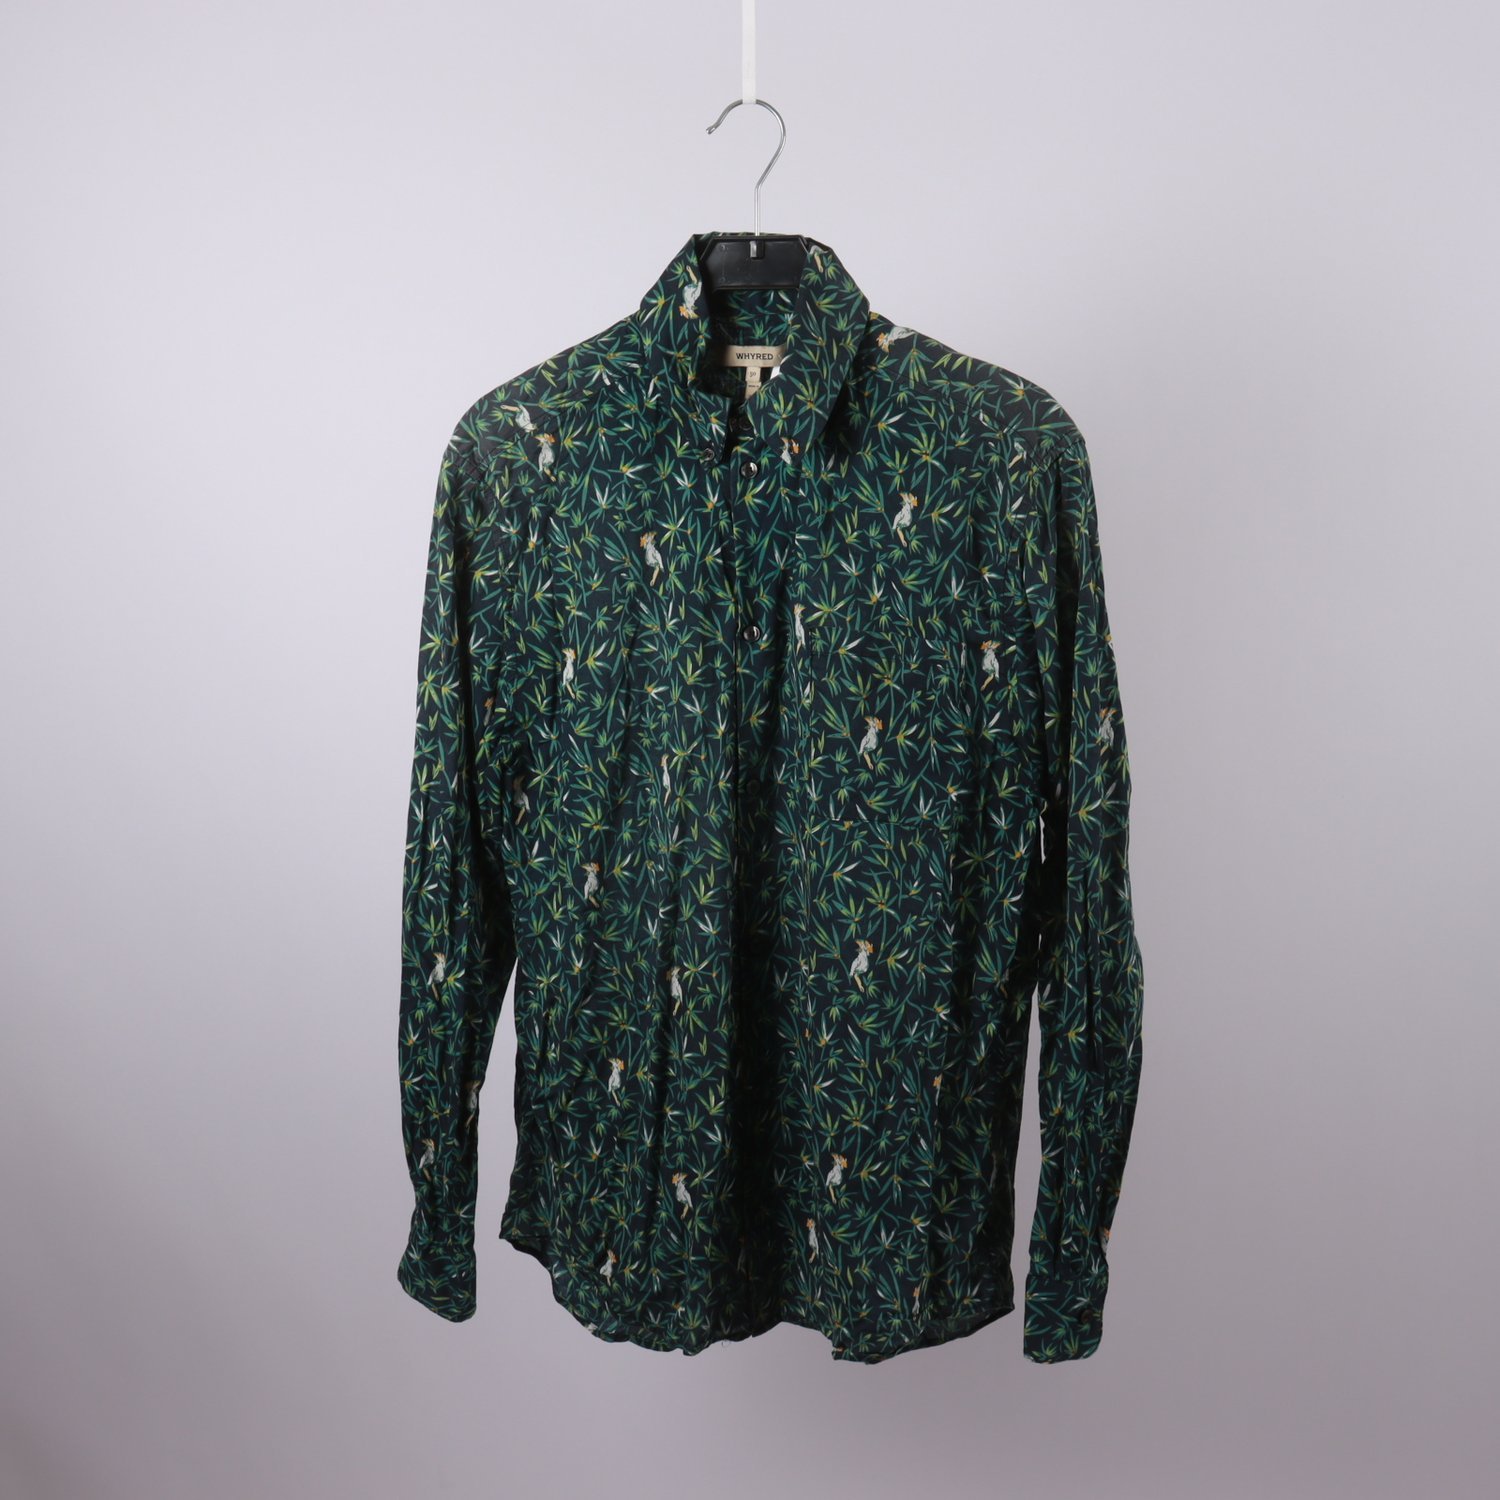 Skjorta, Whyred, grön, mönstrad, fåglar, stl. 50